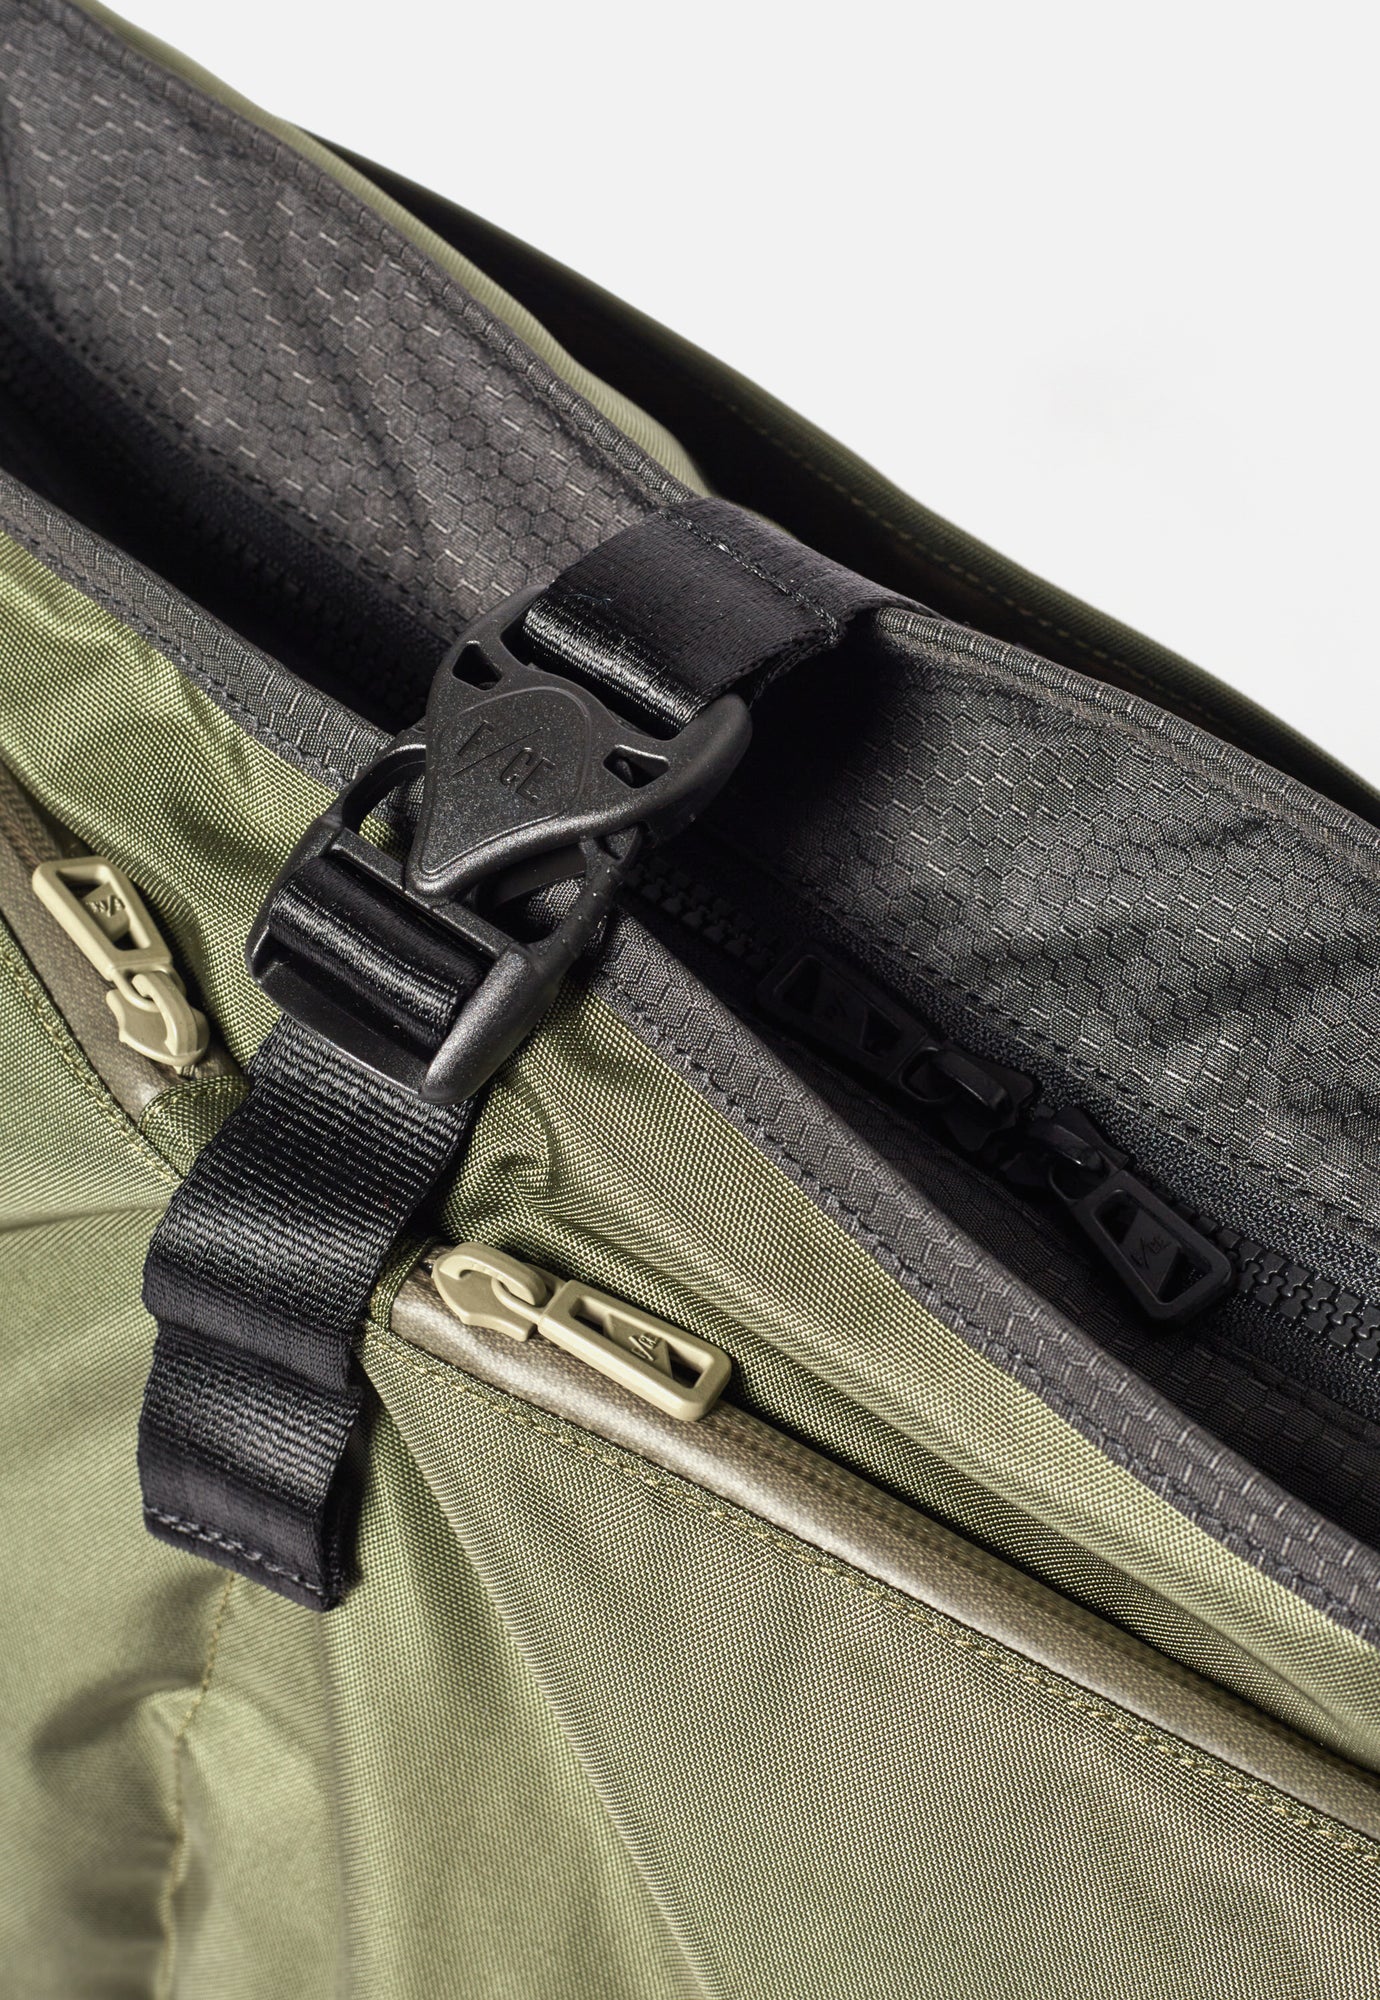 F/CE.® Lightweight Courier Shoulder Bag in Sage Green